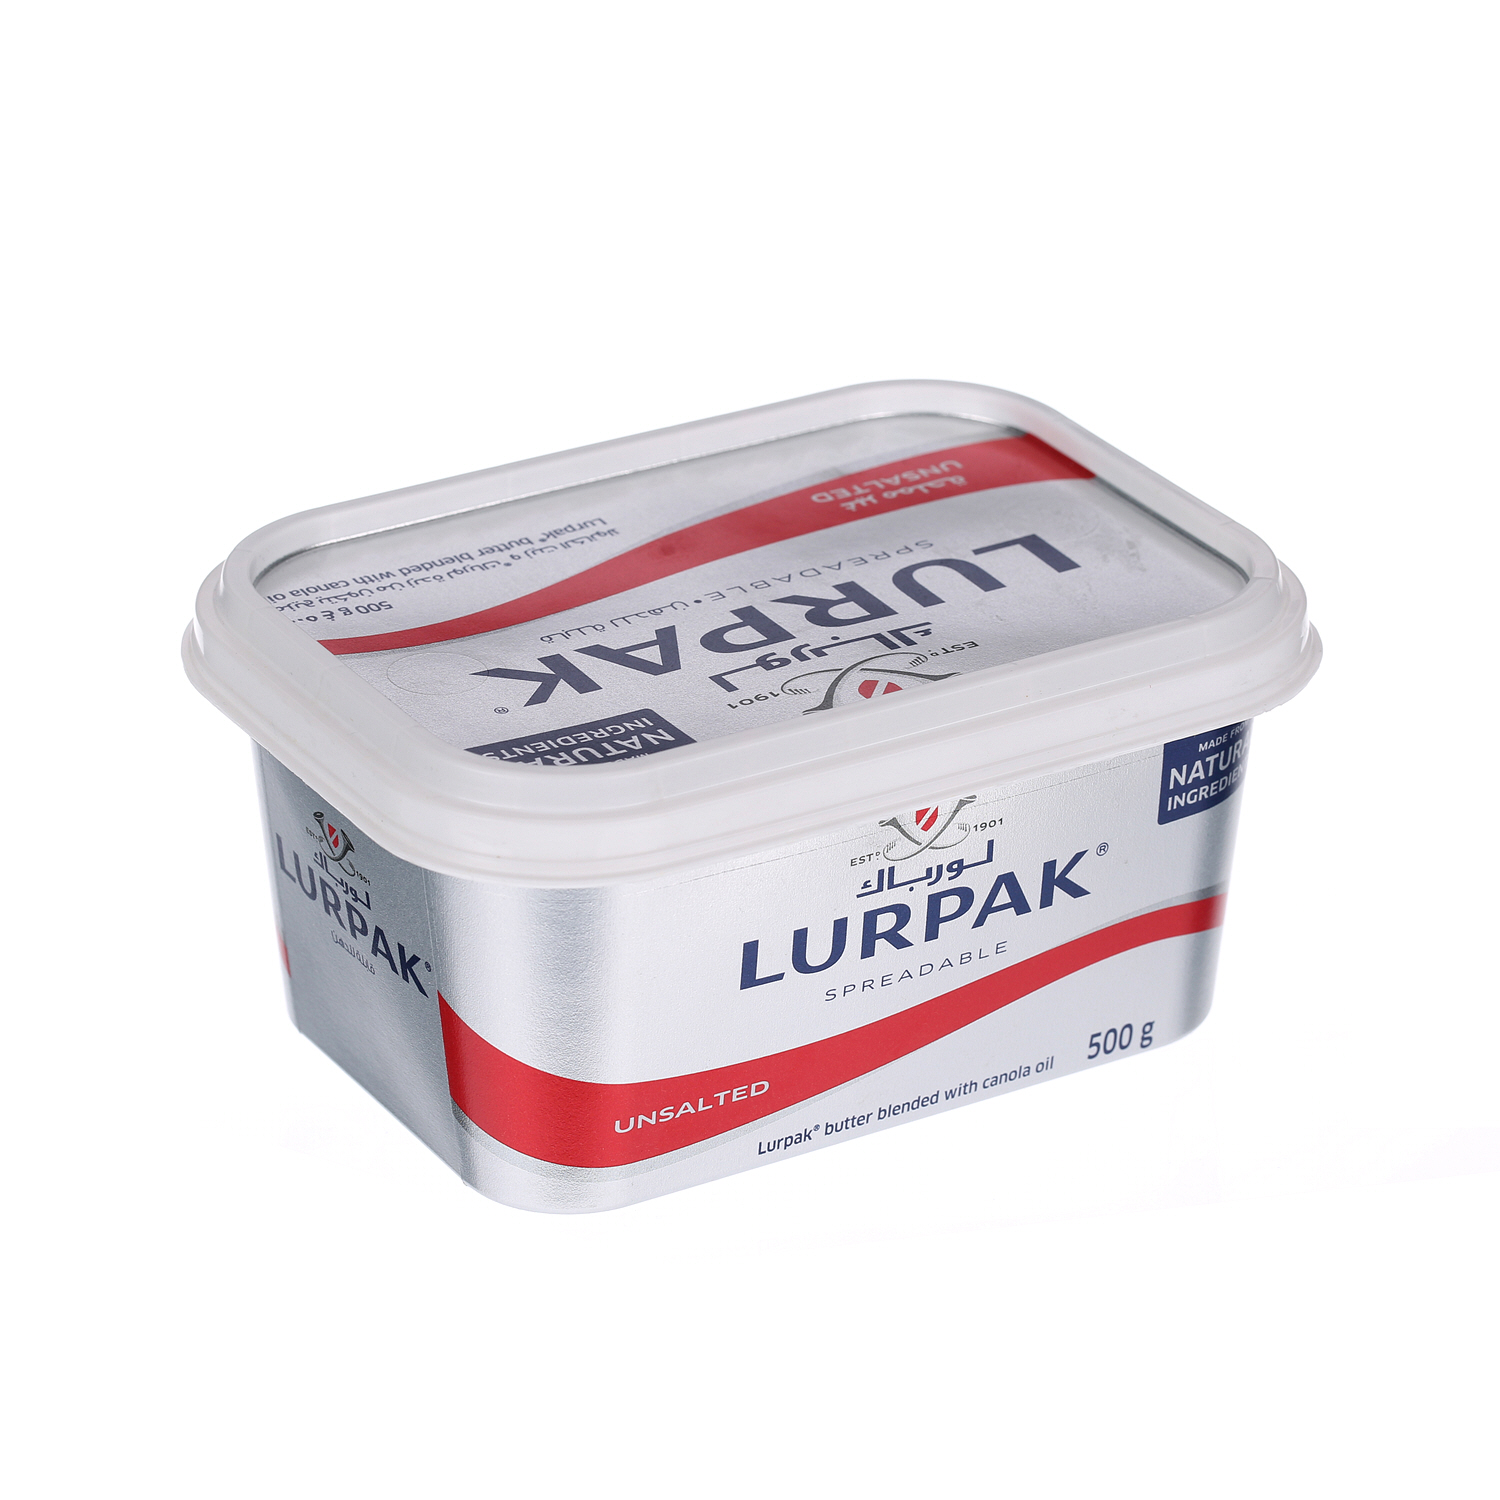 Lurpak Butter Spreadable Unsalted 500 g